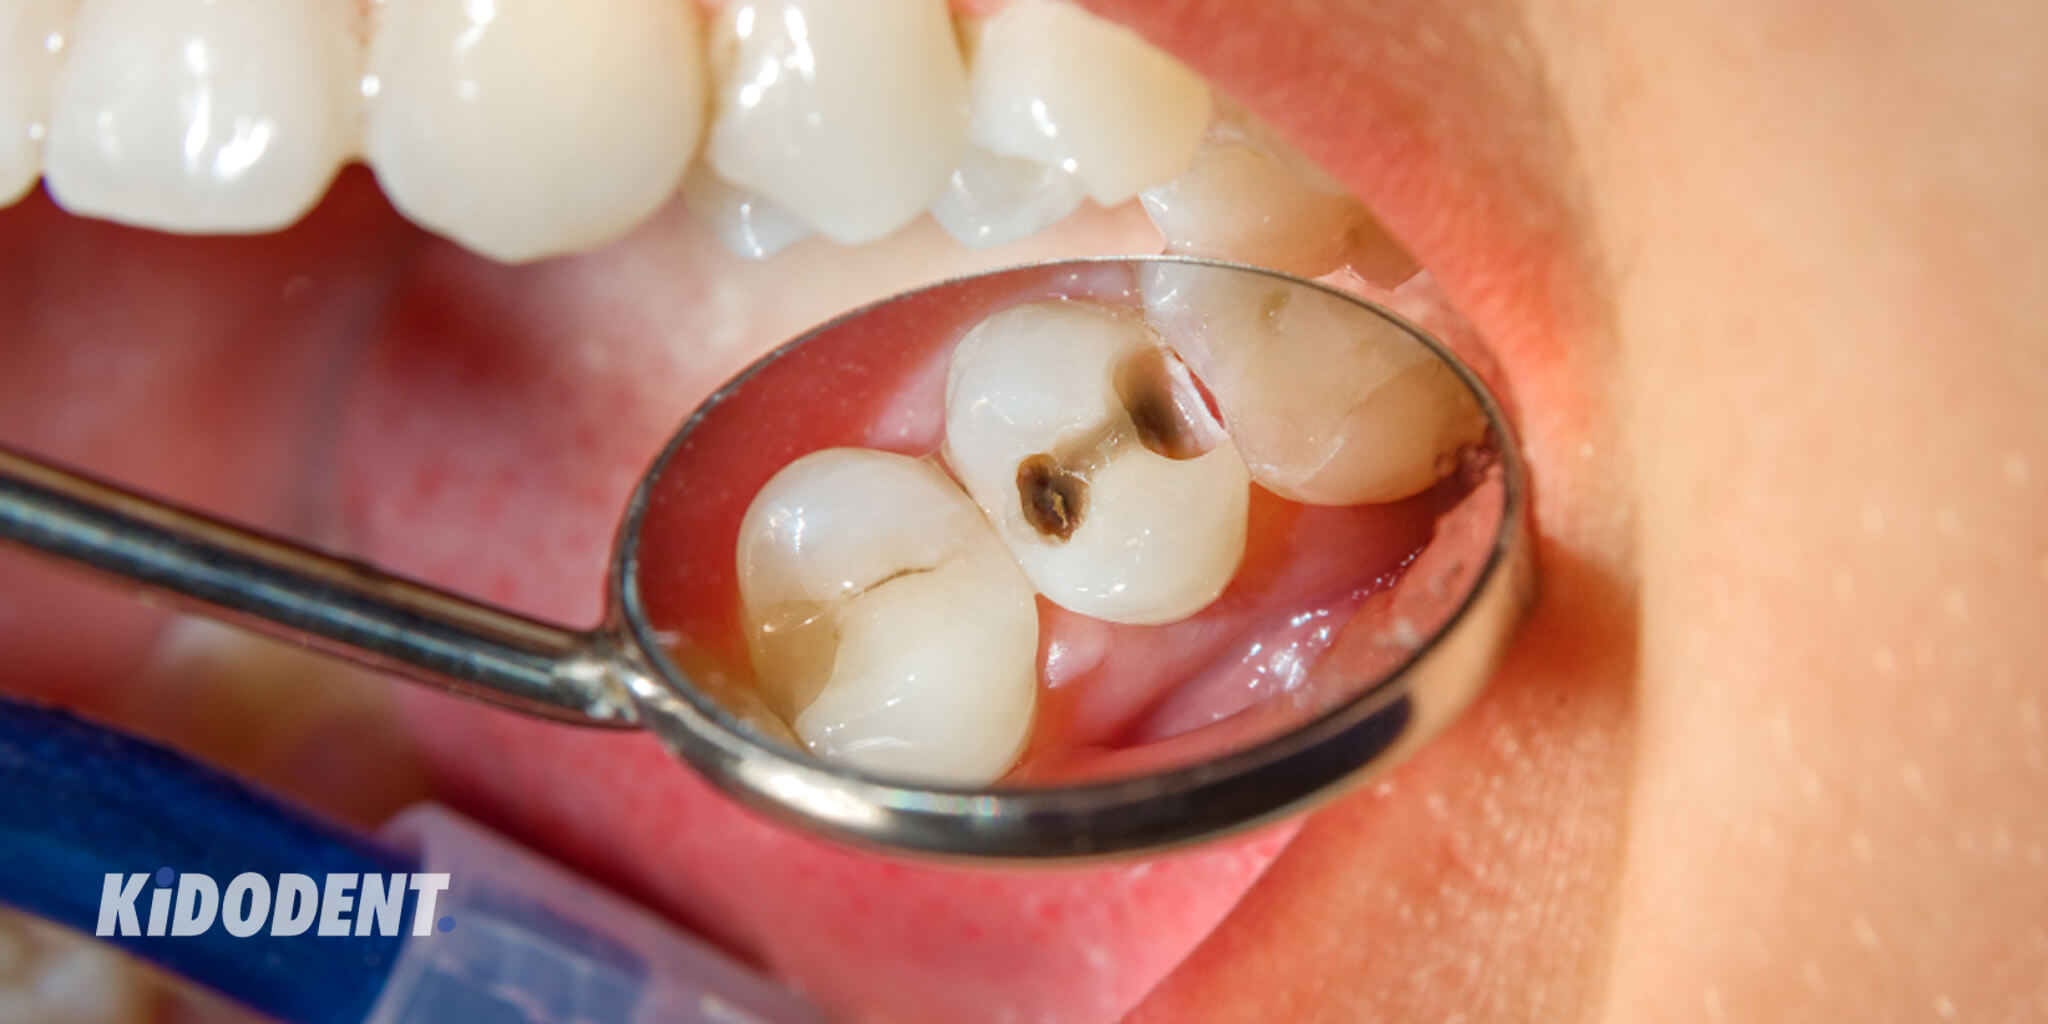 حفره دندان / پوسیدگی دندان: علل، علائم، پیشگیری